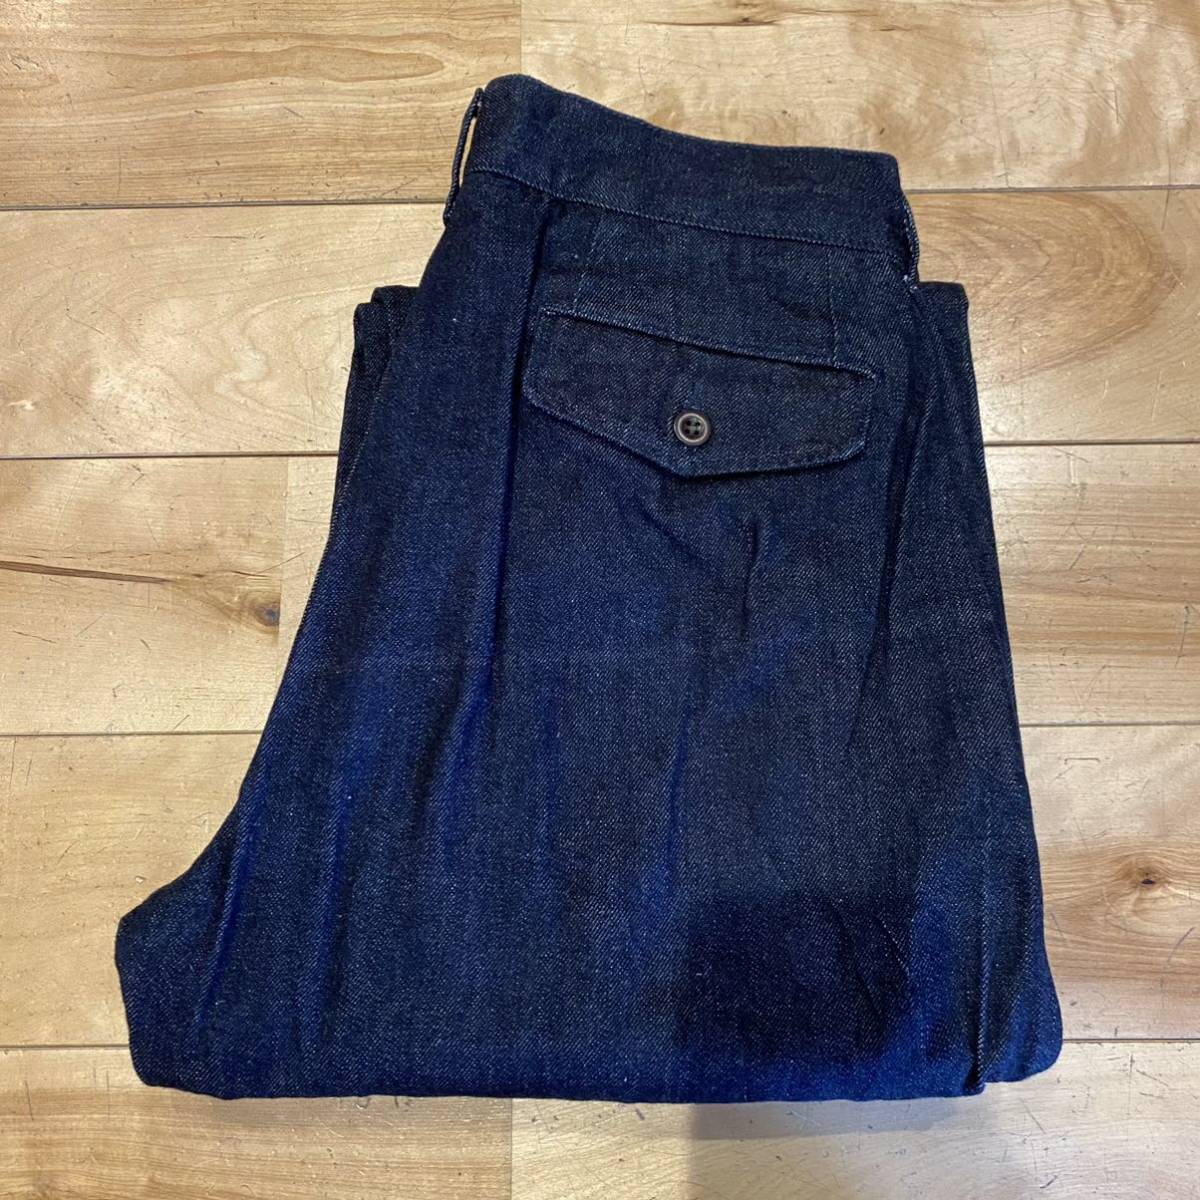 ヤフオク! -「japan blue jeans w30」の落札相場・落札価格